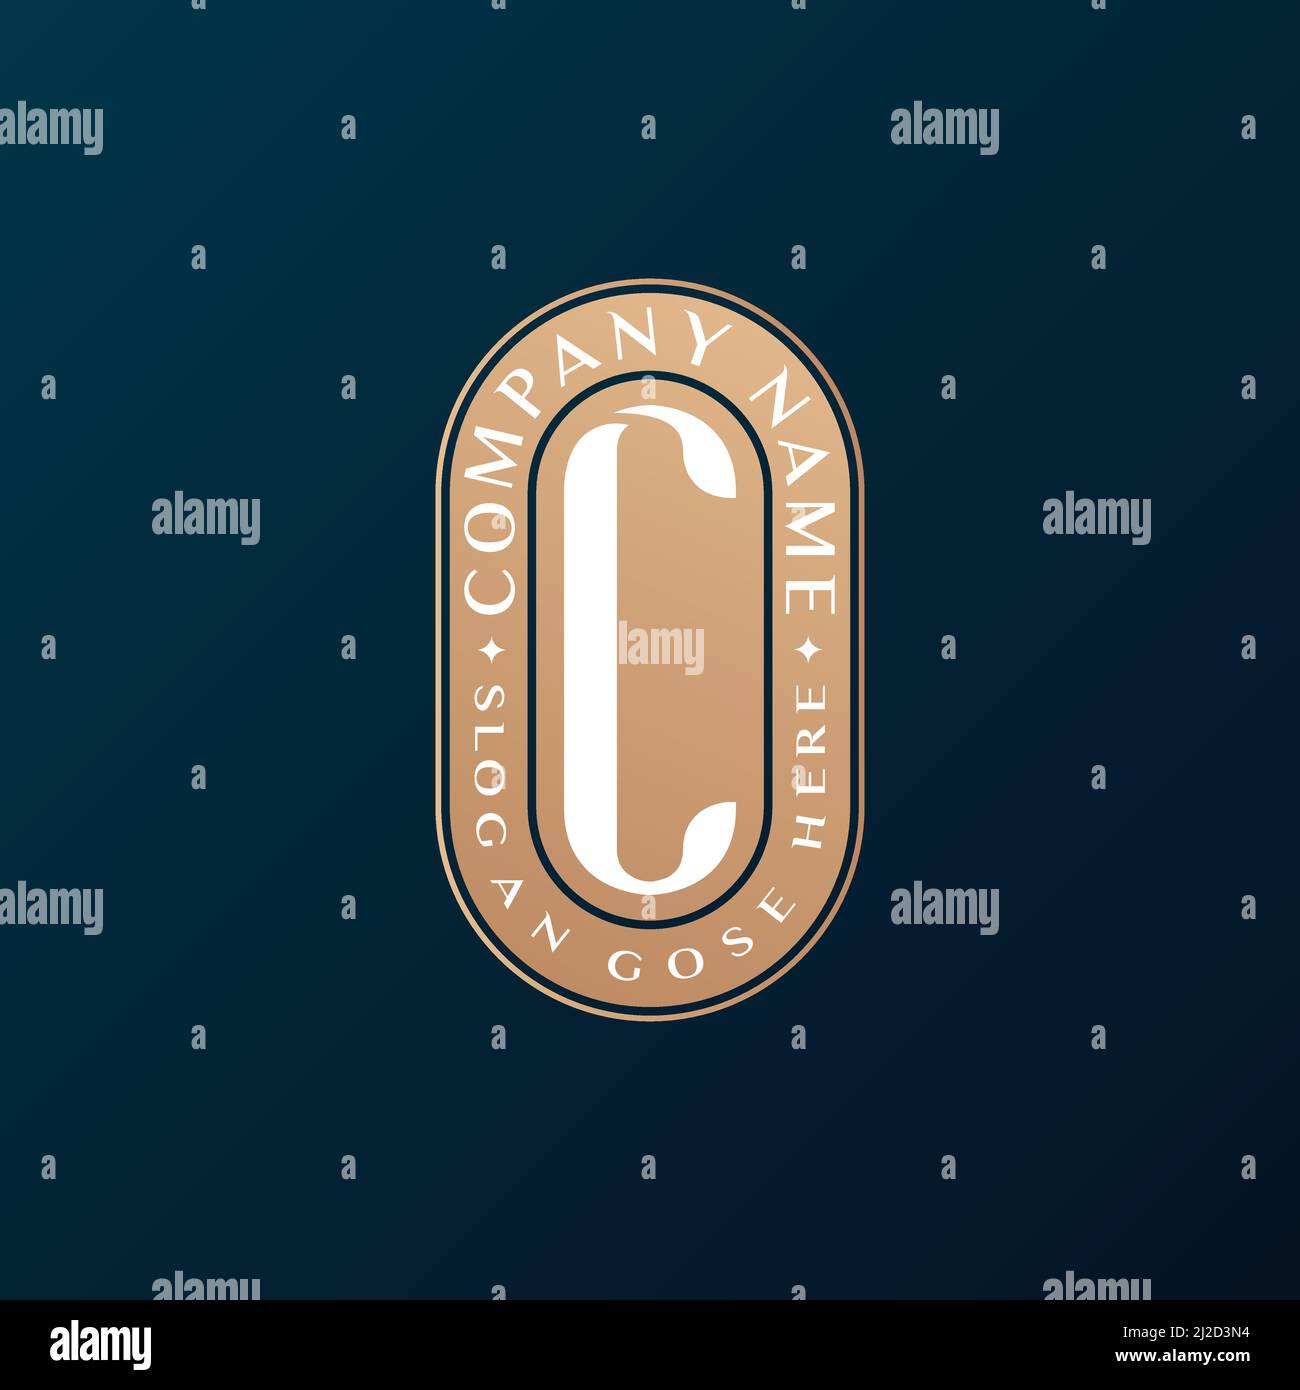 Resumen Emblem Premium lujo identidad corporativa elegante letra C logotipo diseño Ilustración del Vector